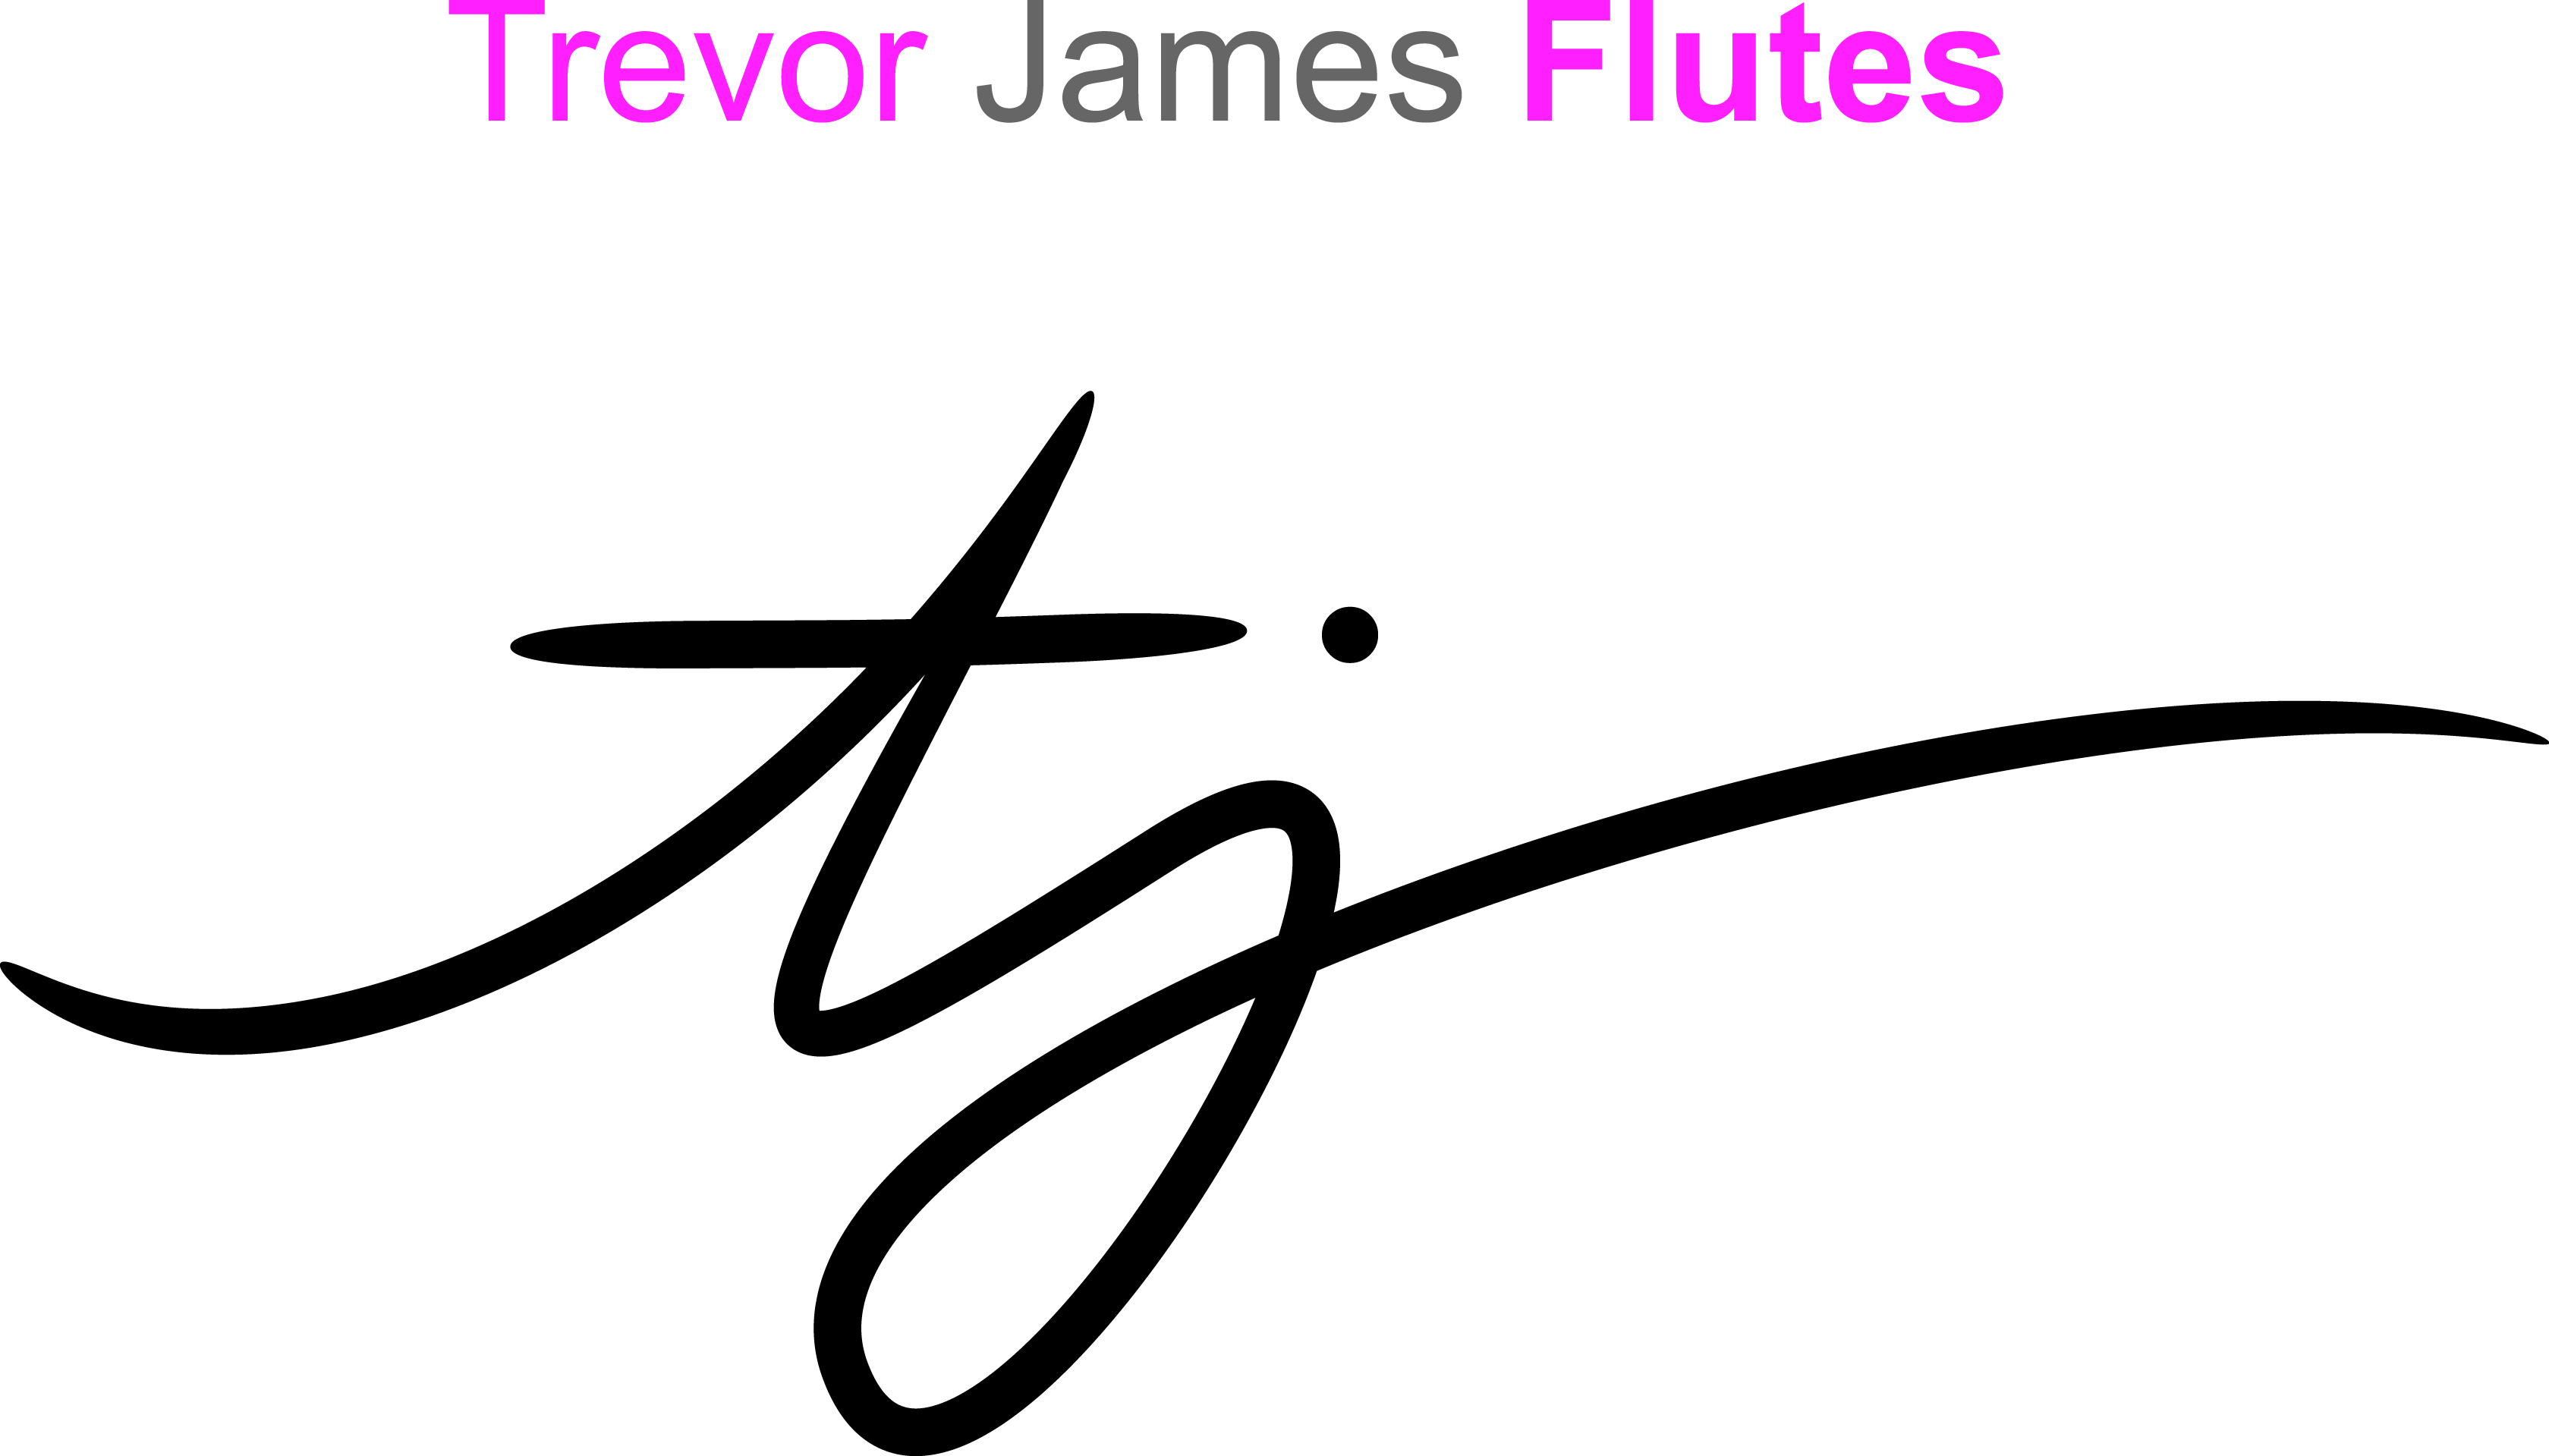 Trevor James Flutes